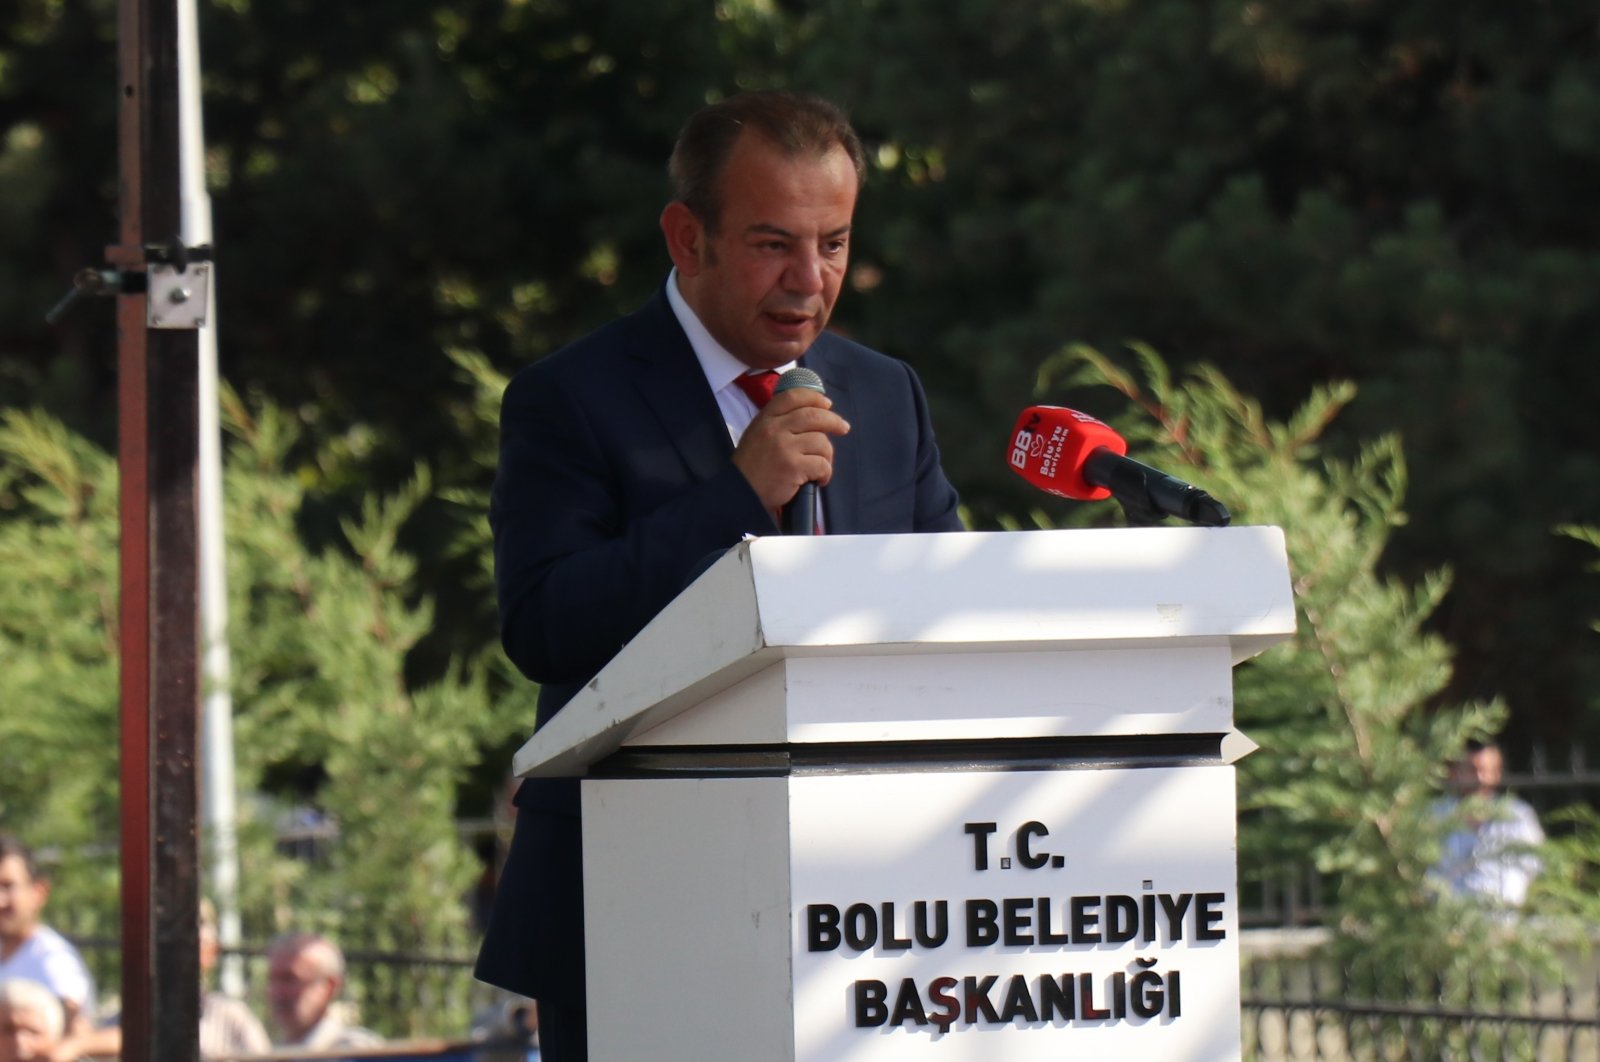 Mayor Tanju Özcan speaks at an inauguration ceremony in Bolu, Türkiye, Sept. 15, 2022. (IHA Photo)